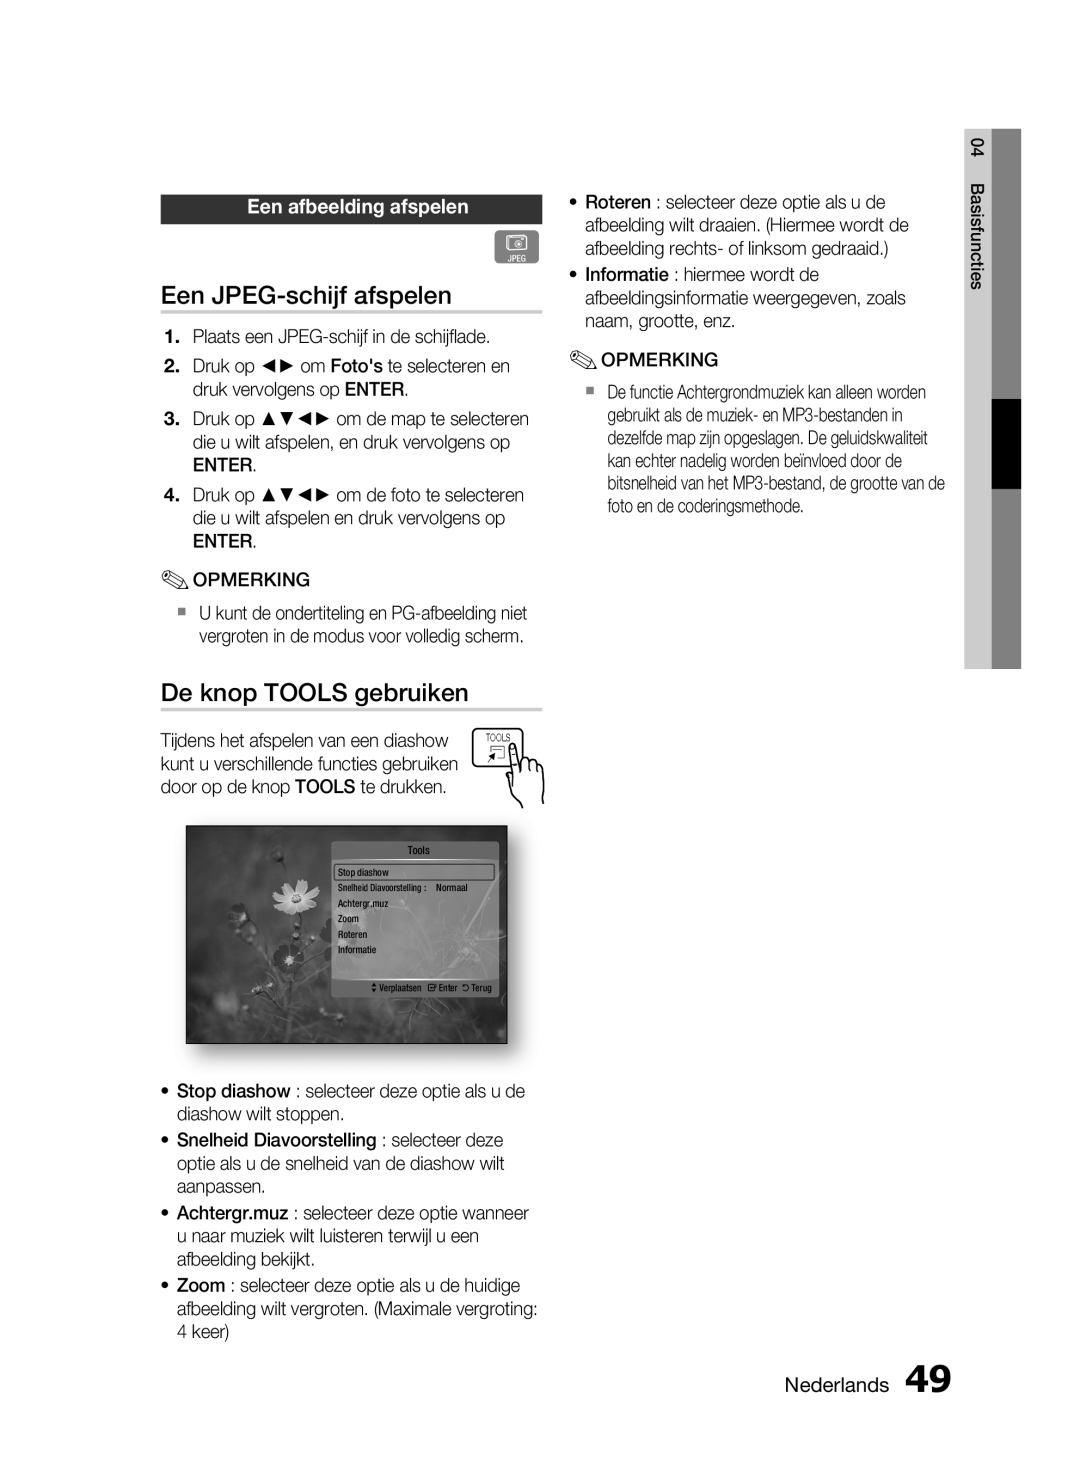 Samsung HT-C6200/XEF manual Een JPEG-schijf afspelen, De knop TOOLS gebruiken, Een afbeelding afspelen, Nederlands 